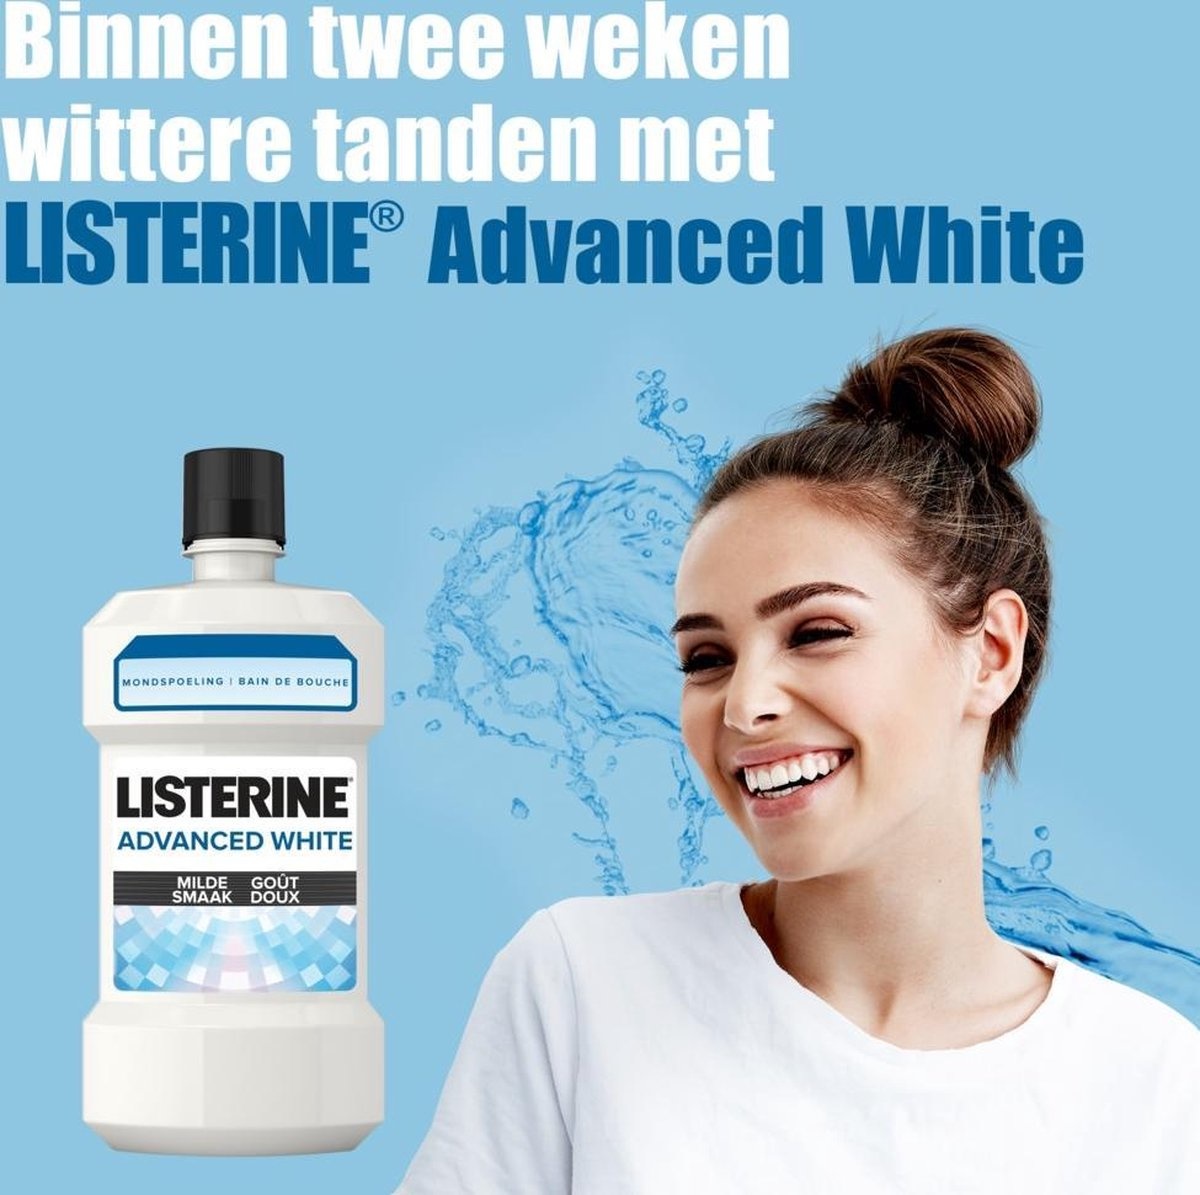 Listerine Mundwasser Advanced White Mild 500 ml - Verpackung beschädigt